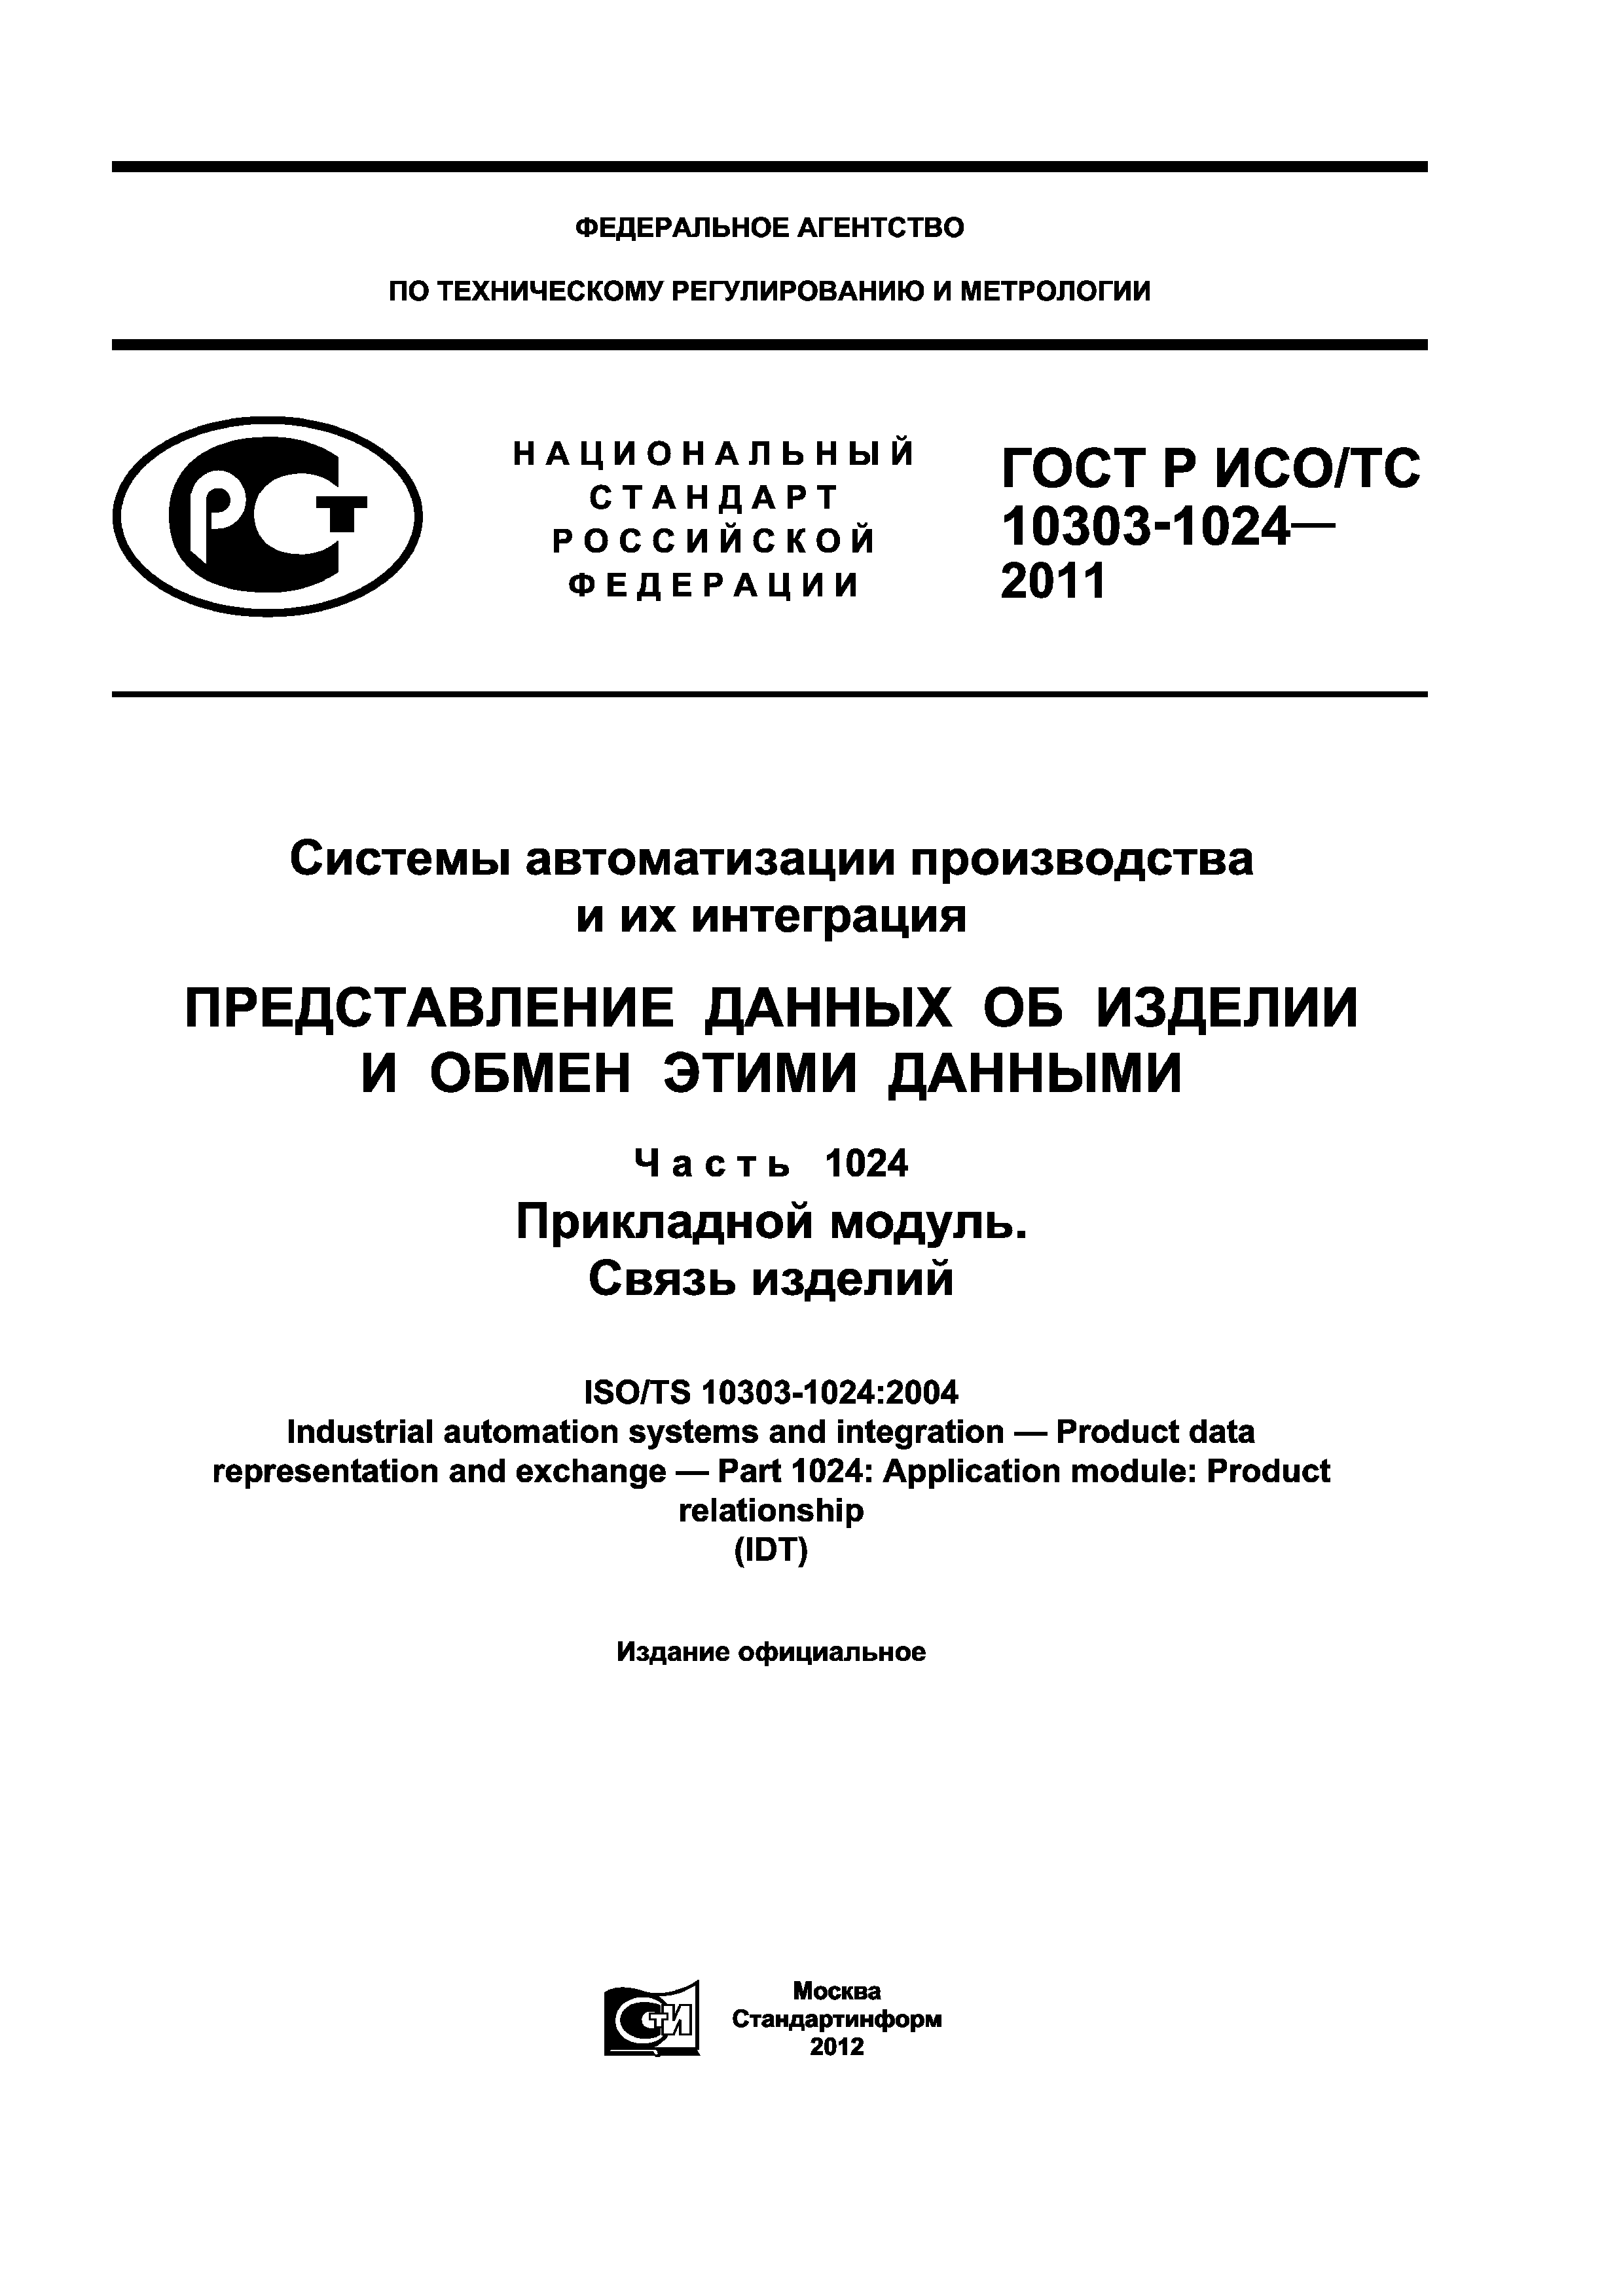 ГОСТ Р ИСО/ТС 10303-1024-2011